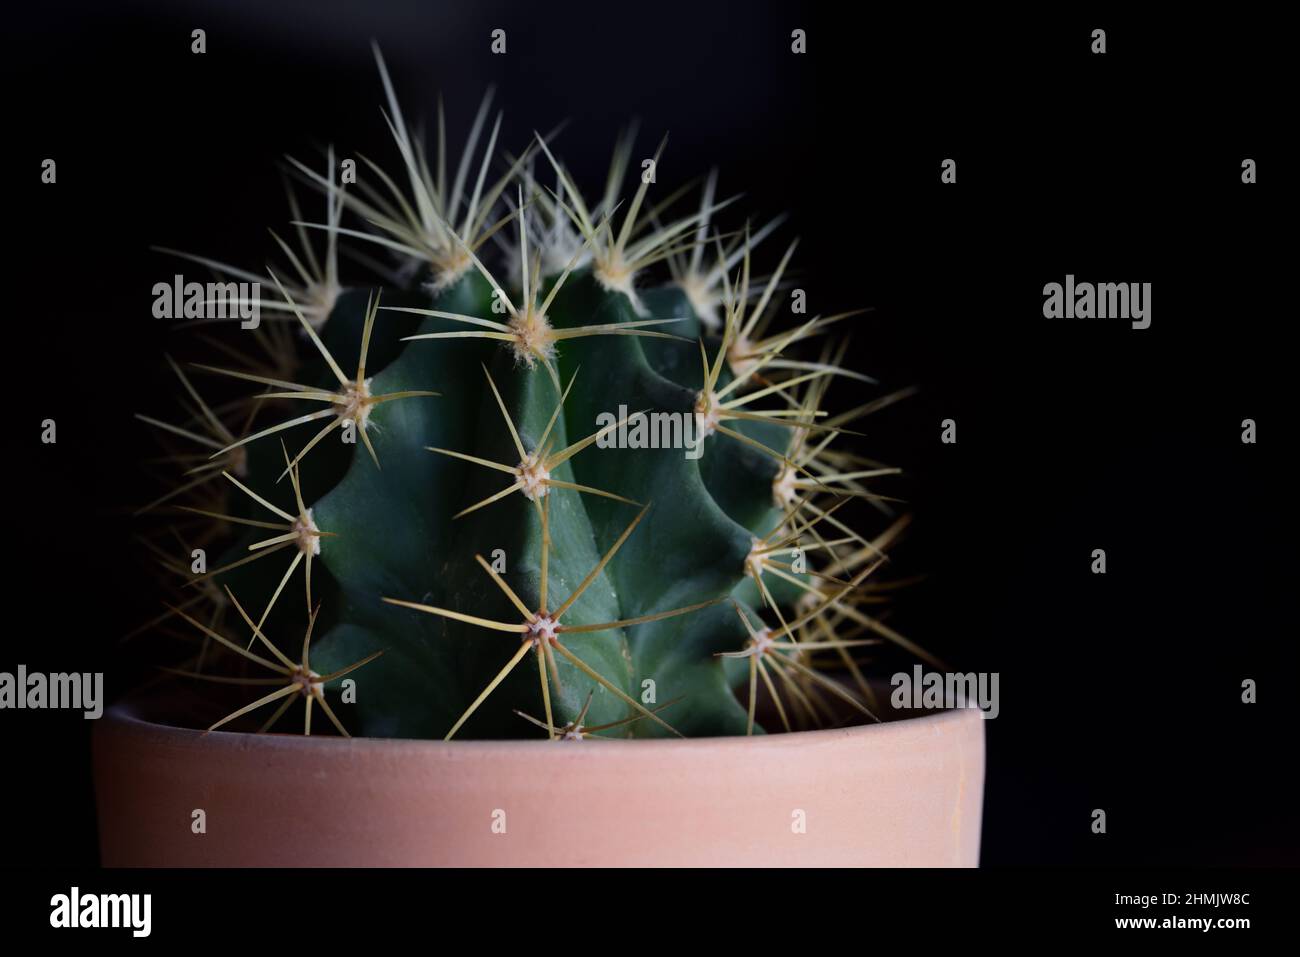 Un piccolo cactus pungente verde con punte lunghe, in una pentola di fiori di argilla cotta al forno, su sfondo scuro, con una piccola macchia bianca di luce nella parte superiore della ba Foto Stock